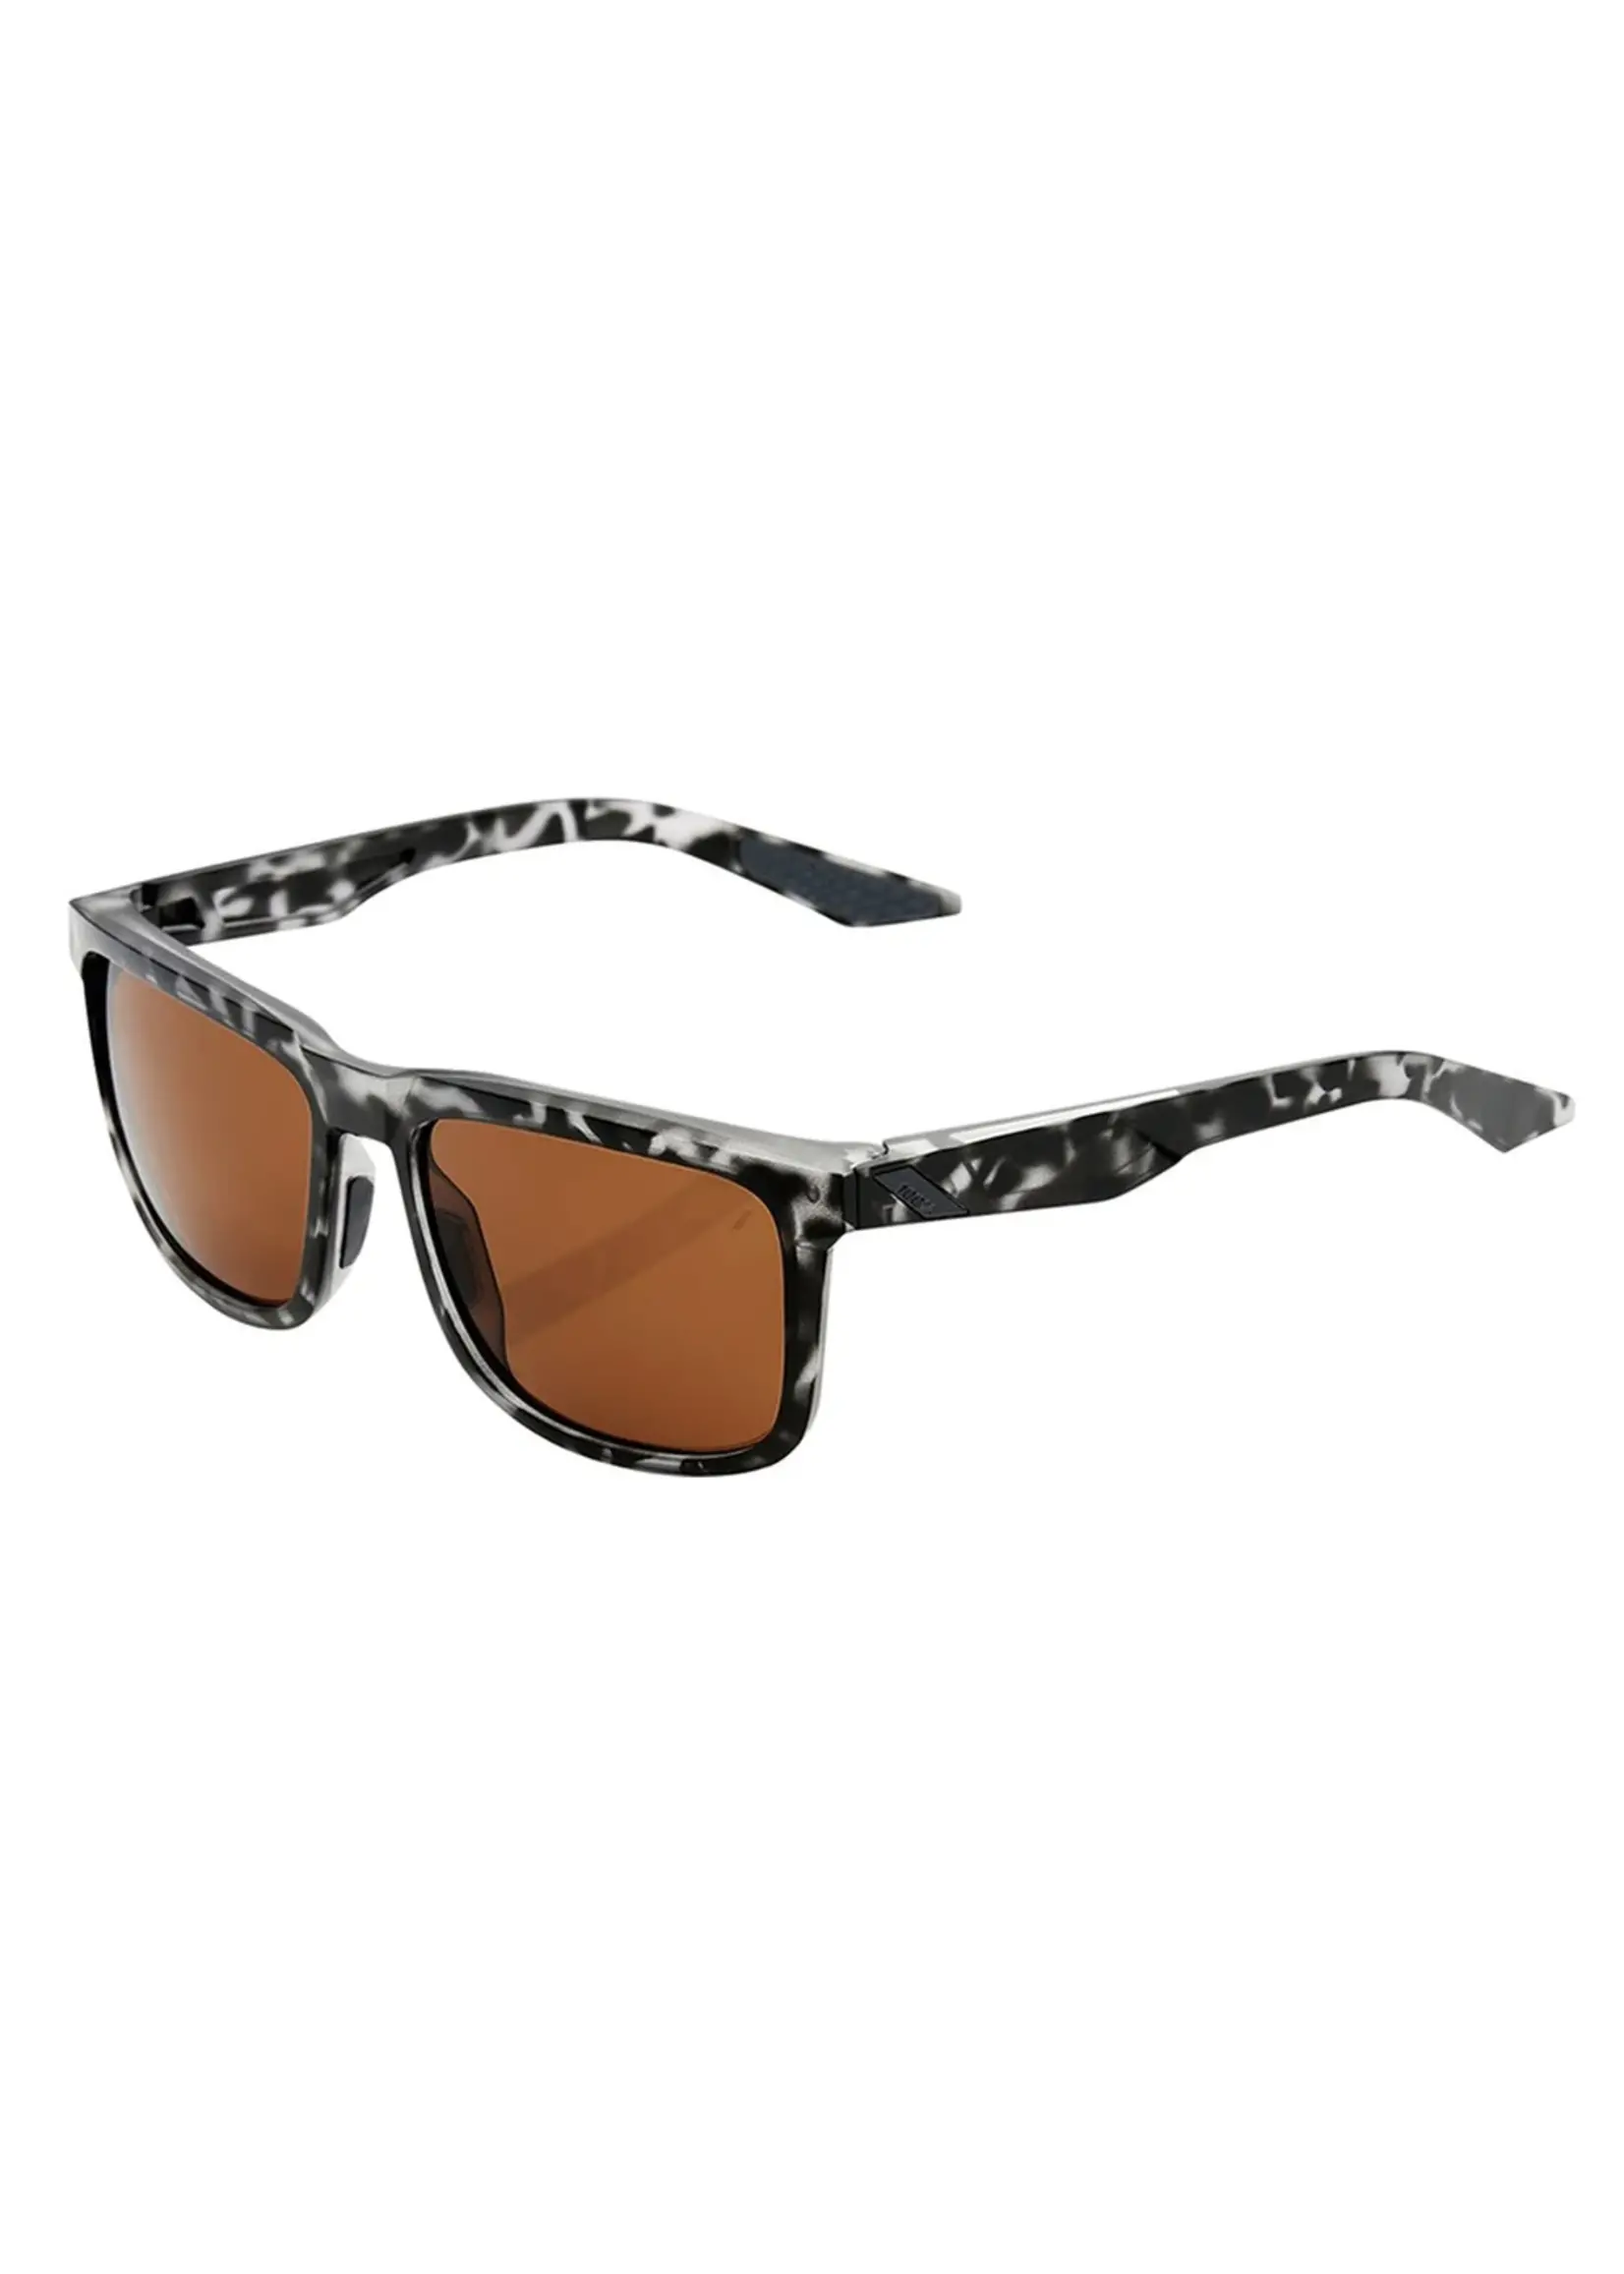 100 Percent 100% Blake Sunglasses, Matte Black Havana frame - Bronze Lens